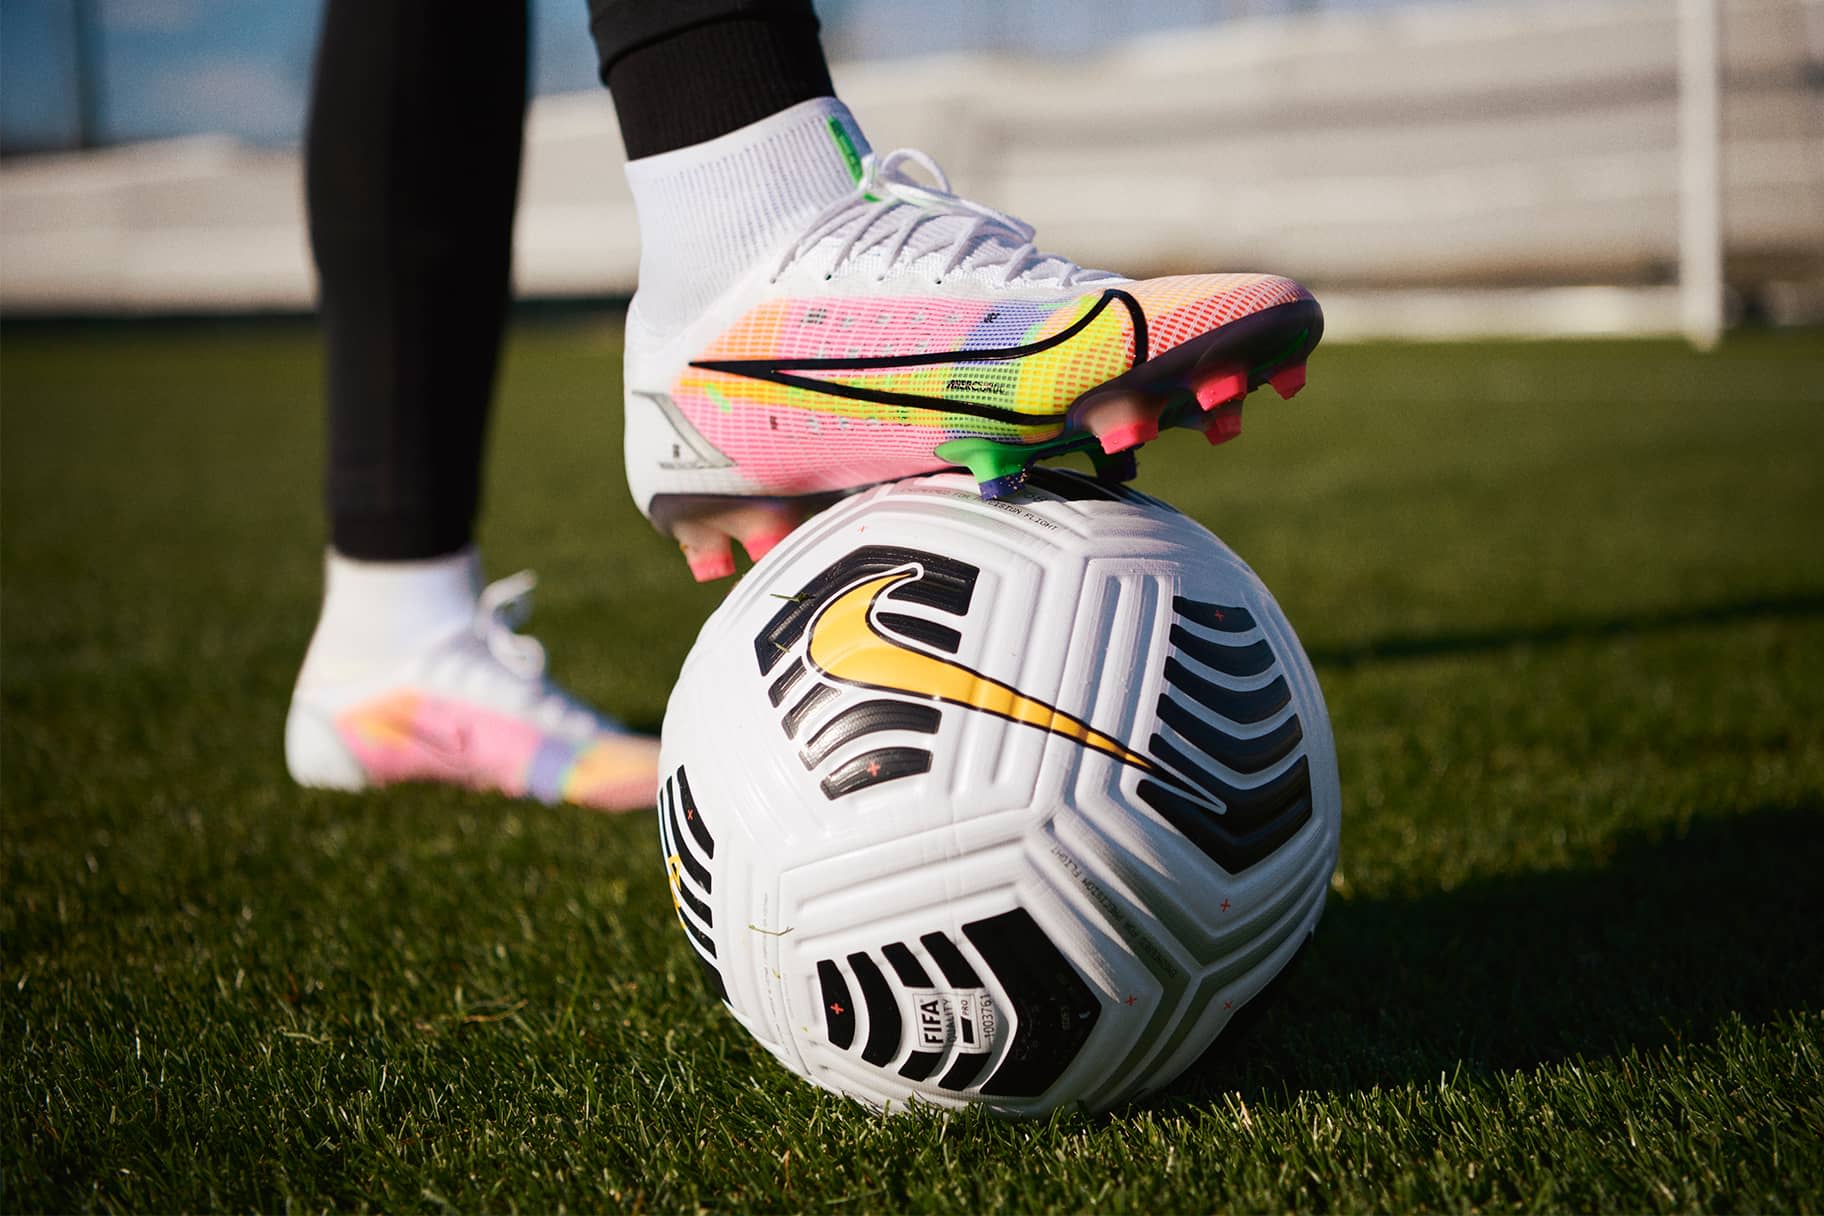 Les millors botes de futbol Nike per encaixar amb el teu estil de joc